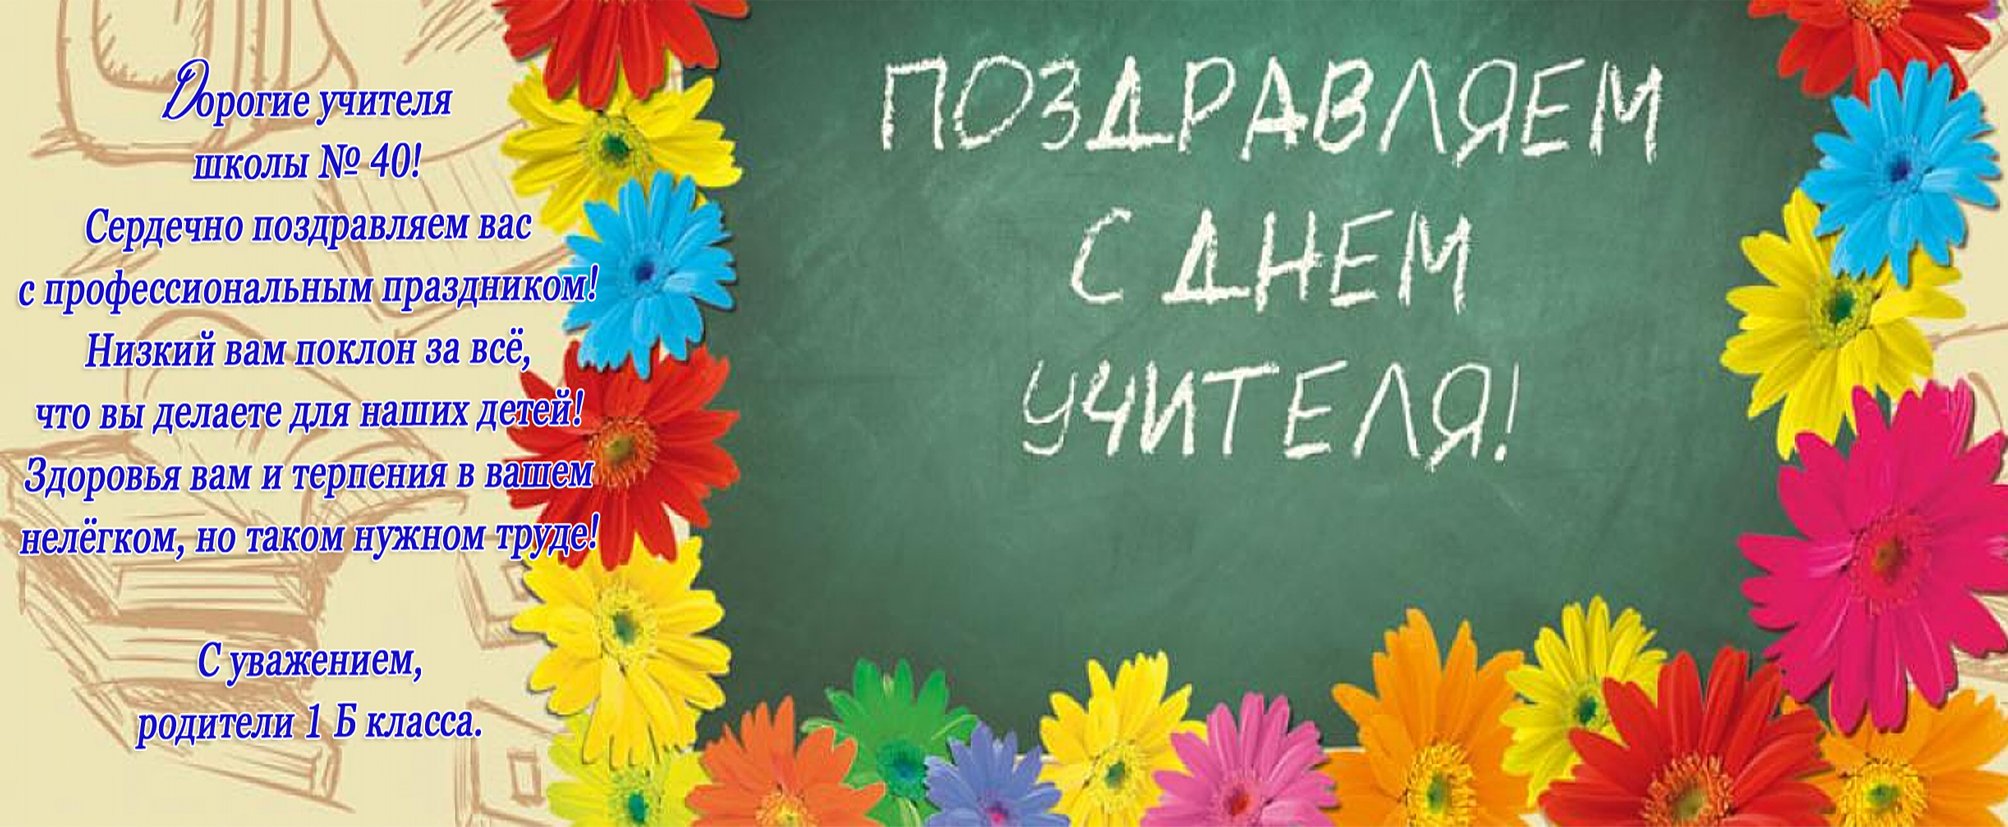 Фото Поздравление учителю украинского языка #35